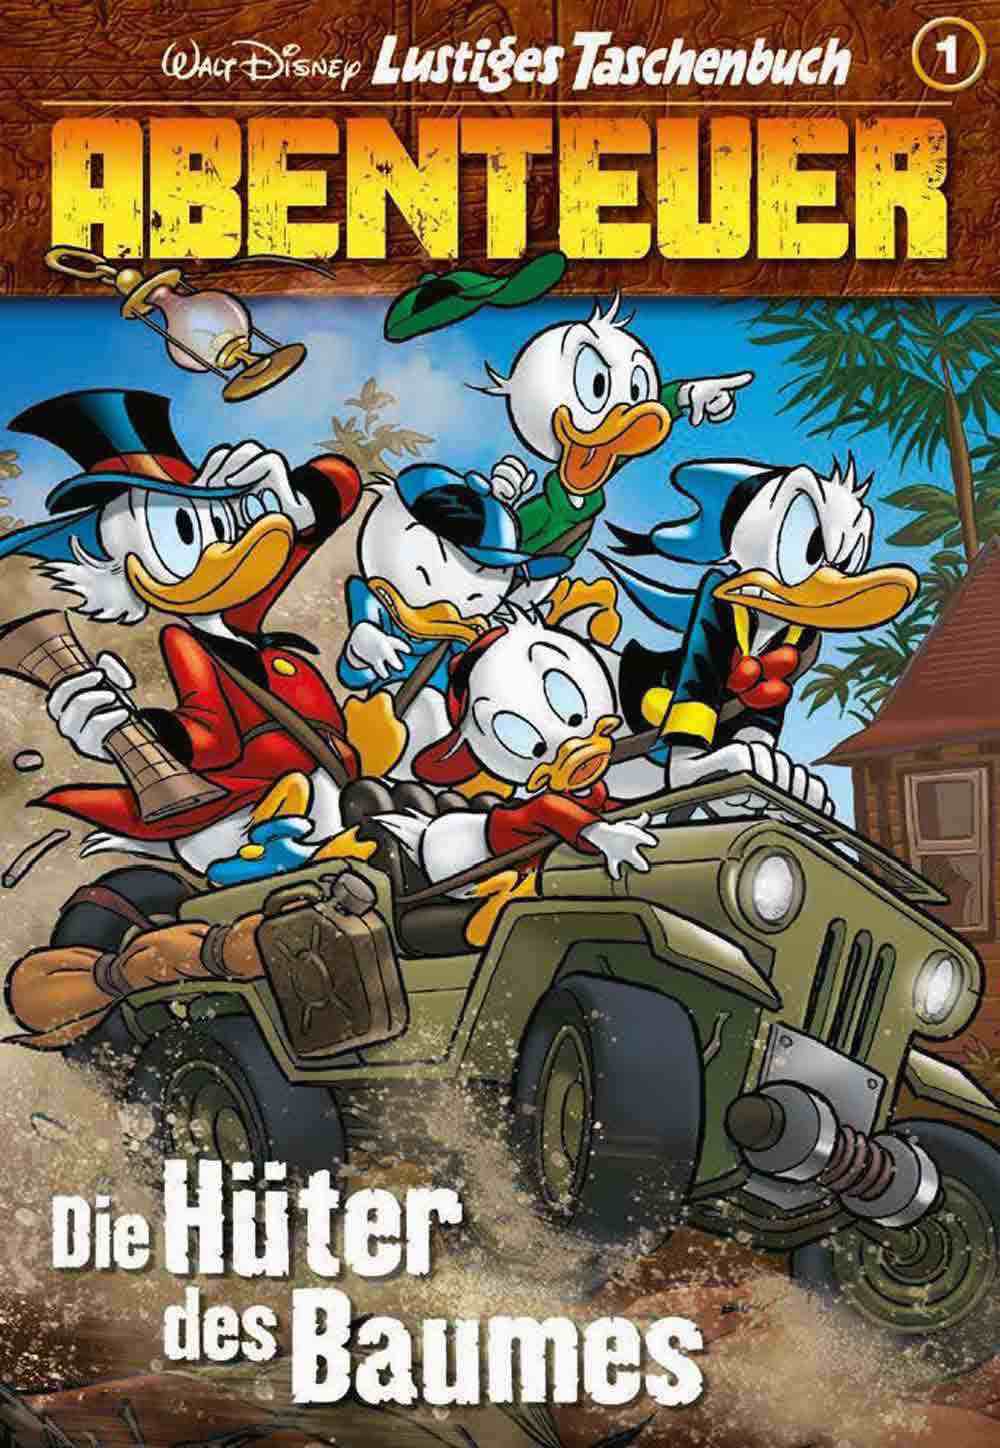 Rückkehr der Reiselust: Donald Duck & Co. auf weltweiter Abenteuertour